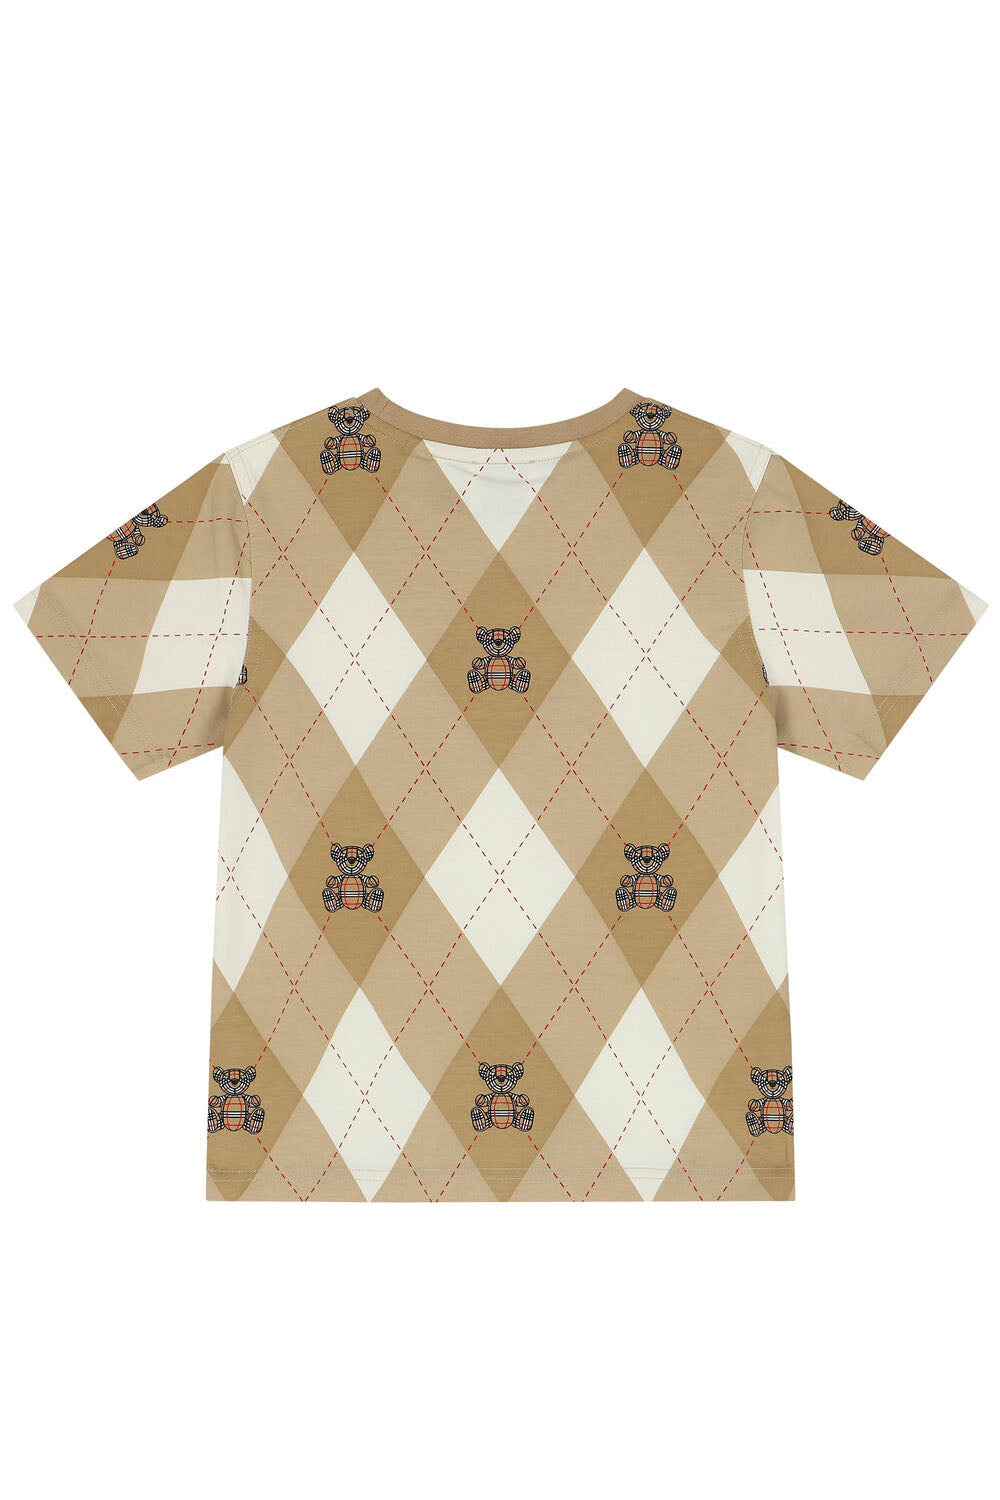 Thomas Bear Argyle Print Cotton T-shirt for Boys - Maison7